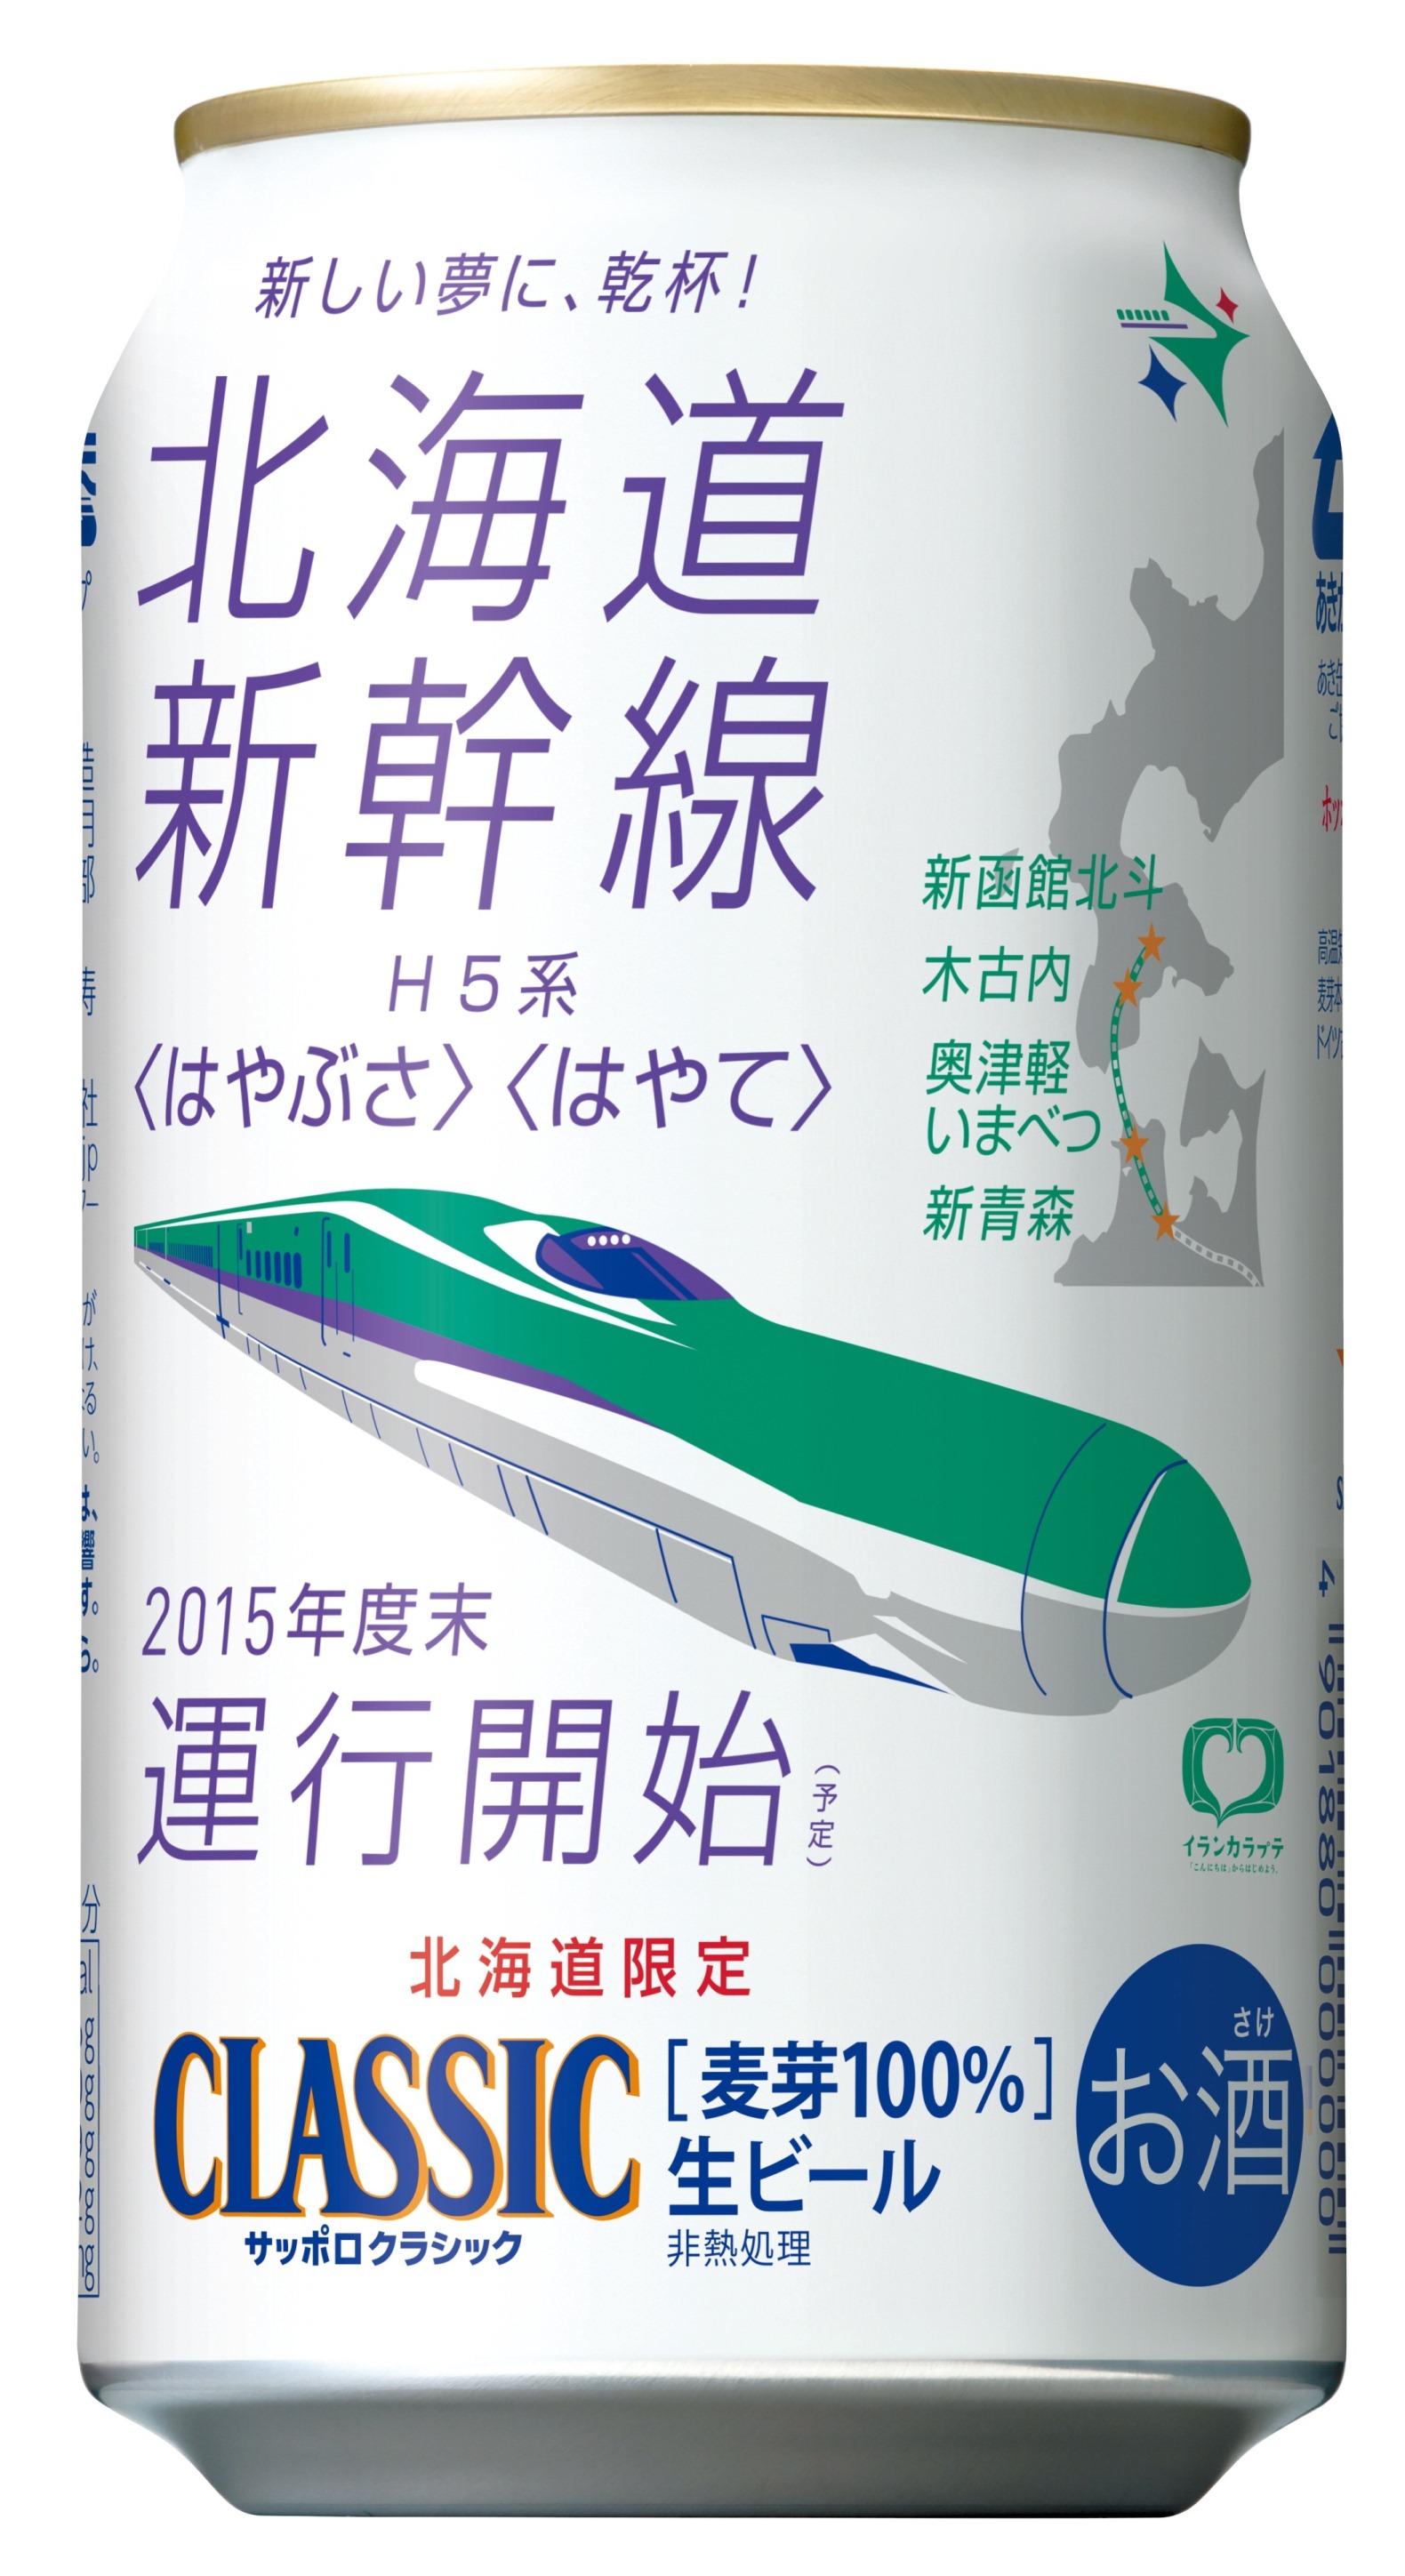 サッポロ クラシック 北海道新幹線缶 および 北海道新幹線缶ギフトセット 限定発売 ニュースリリース サッポロビール